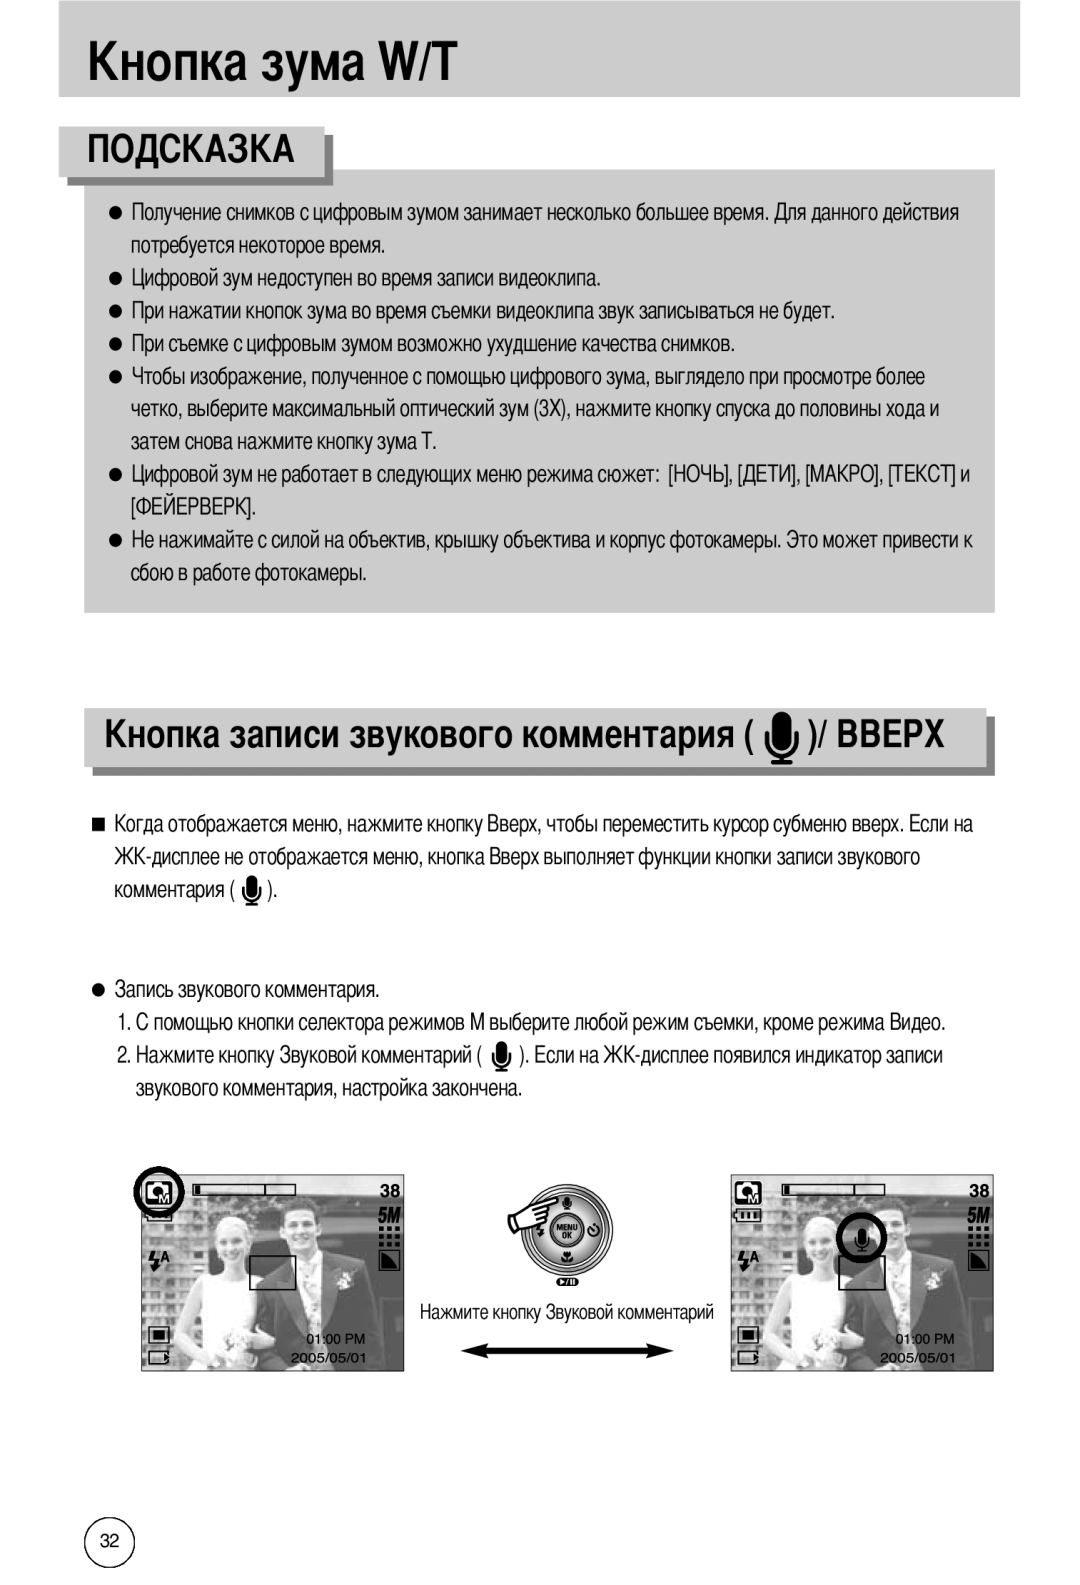 Samsung EC-I50ZZRBA/DE, EC-I50ZZBBA/FR manual ового комментария, потребуется некоторое время, сбою в работе фотокамеры 